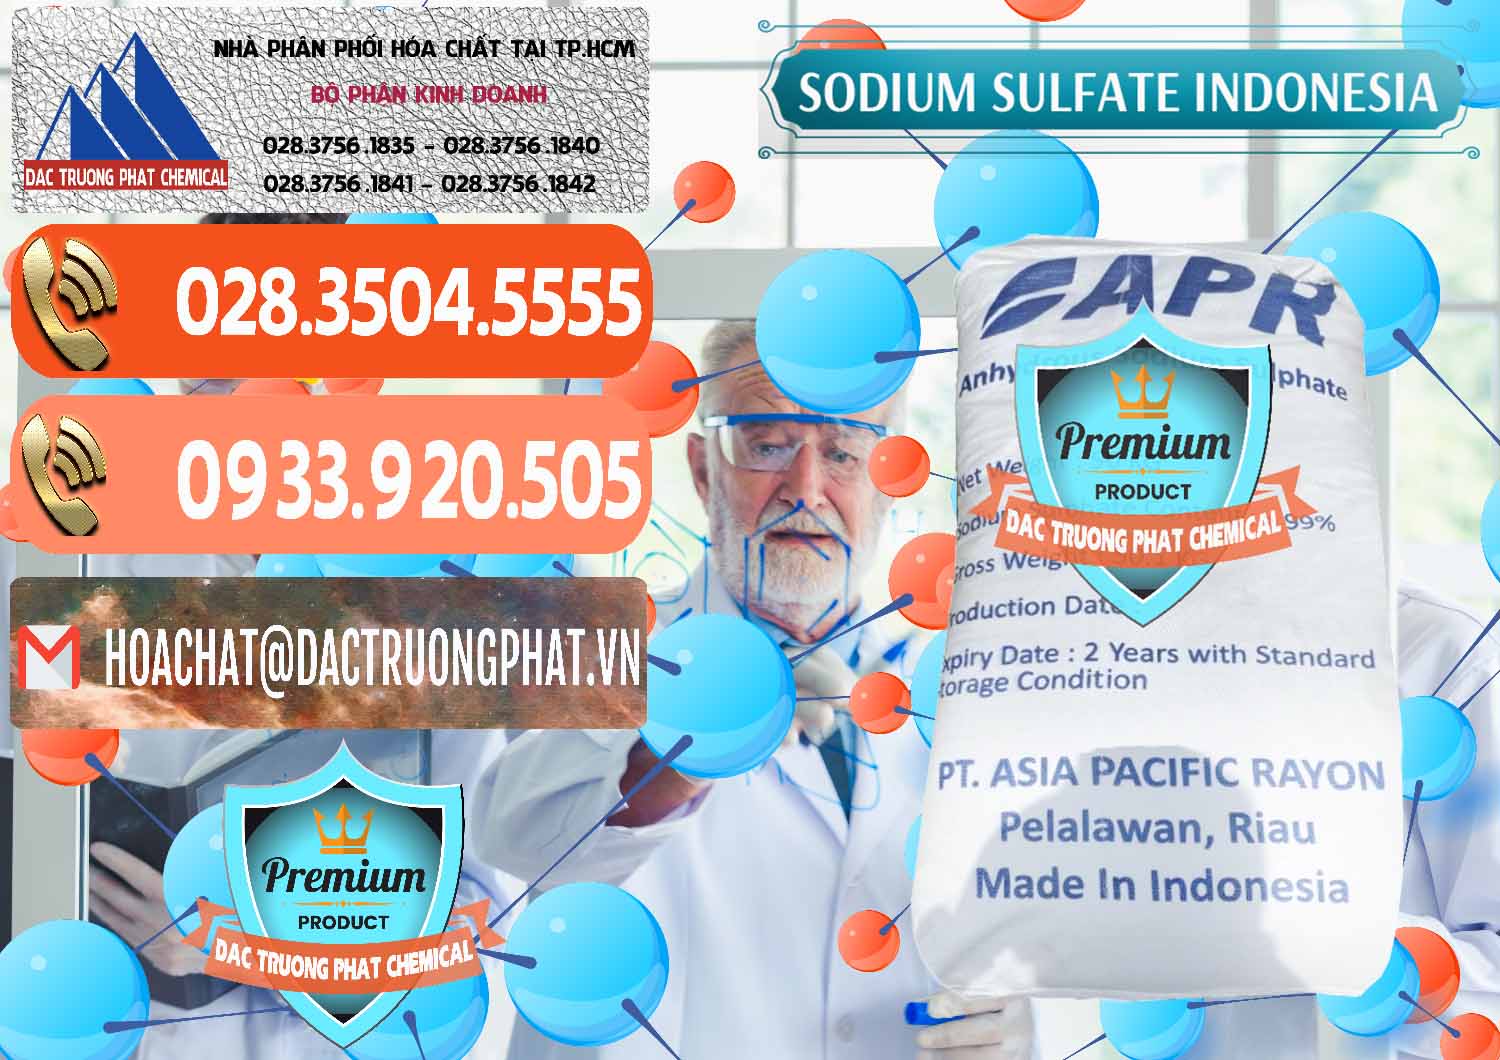 Nơi chuyên bán & cung ứng Sodium Sulphate - Muối Sunfat Na2SO4 APR Indonesia - 0460 - Công ty nhập khẩu & phân phối hóa chất tại TP.HCM - hoachatmientay.com